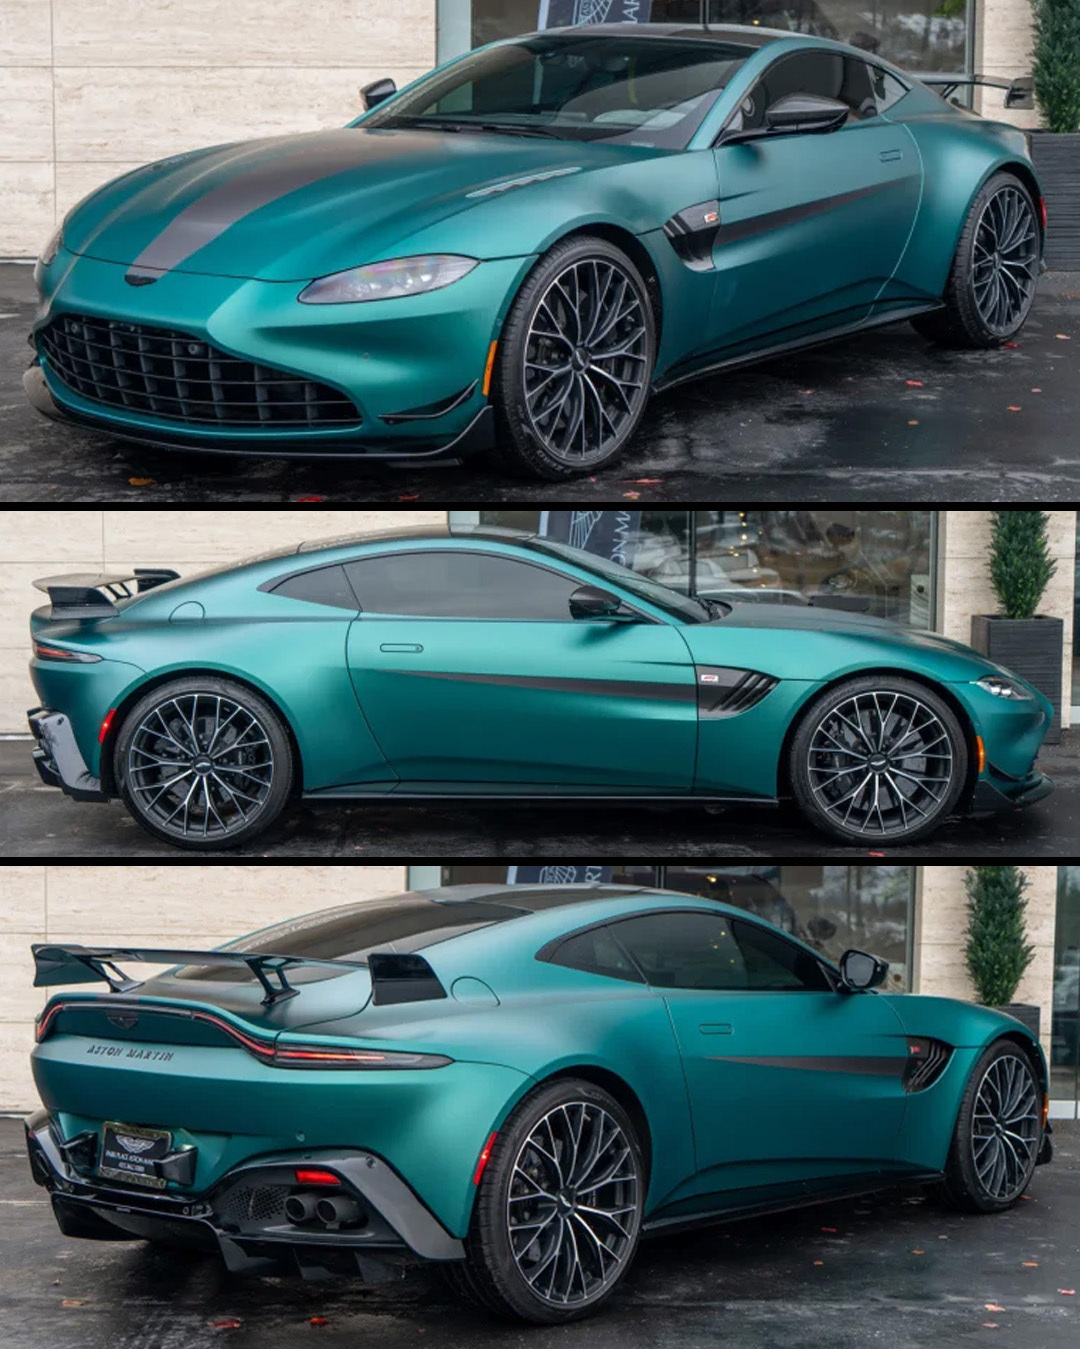 Авто 2022 Aston Martin Vantage F1 Edition Построен и разработан совместно с автомобилем безопасности Aston F1 Этот Vantage, выпущенный ограниченным тиражом, представлен в сатиновом цвете Aston Martin Racing Green поверх черной и фантомно-серой кожи